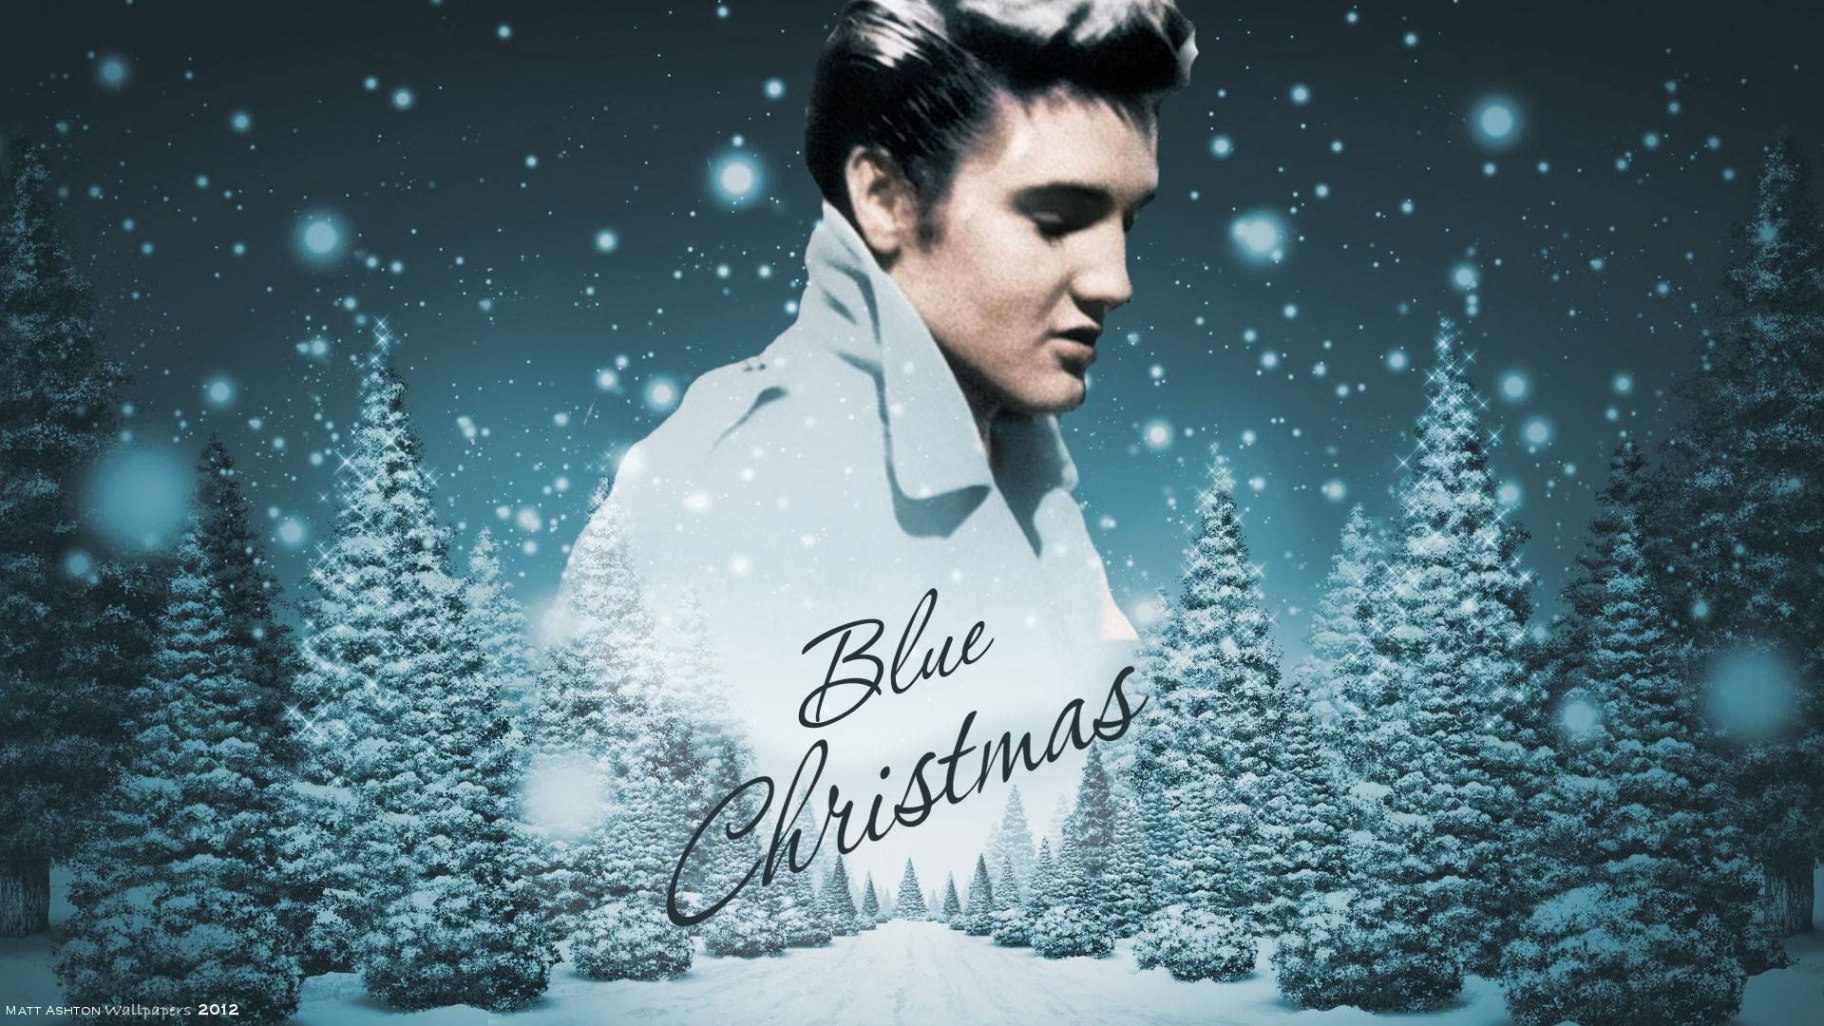 Elvis Presley - Blue Christmas  Elvis presley wallpaper, Elvis